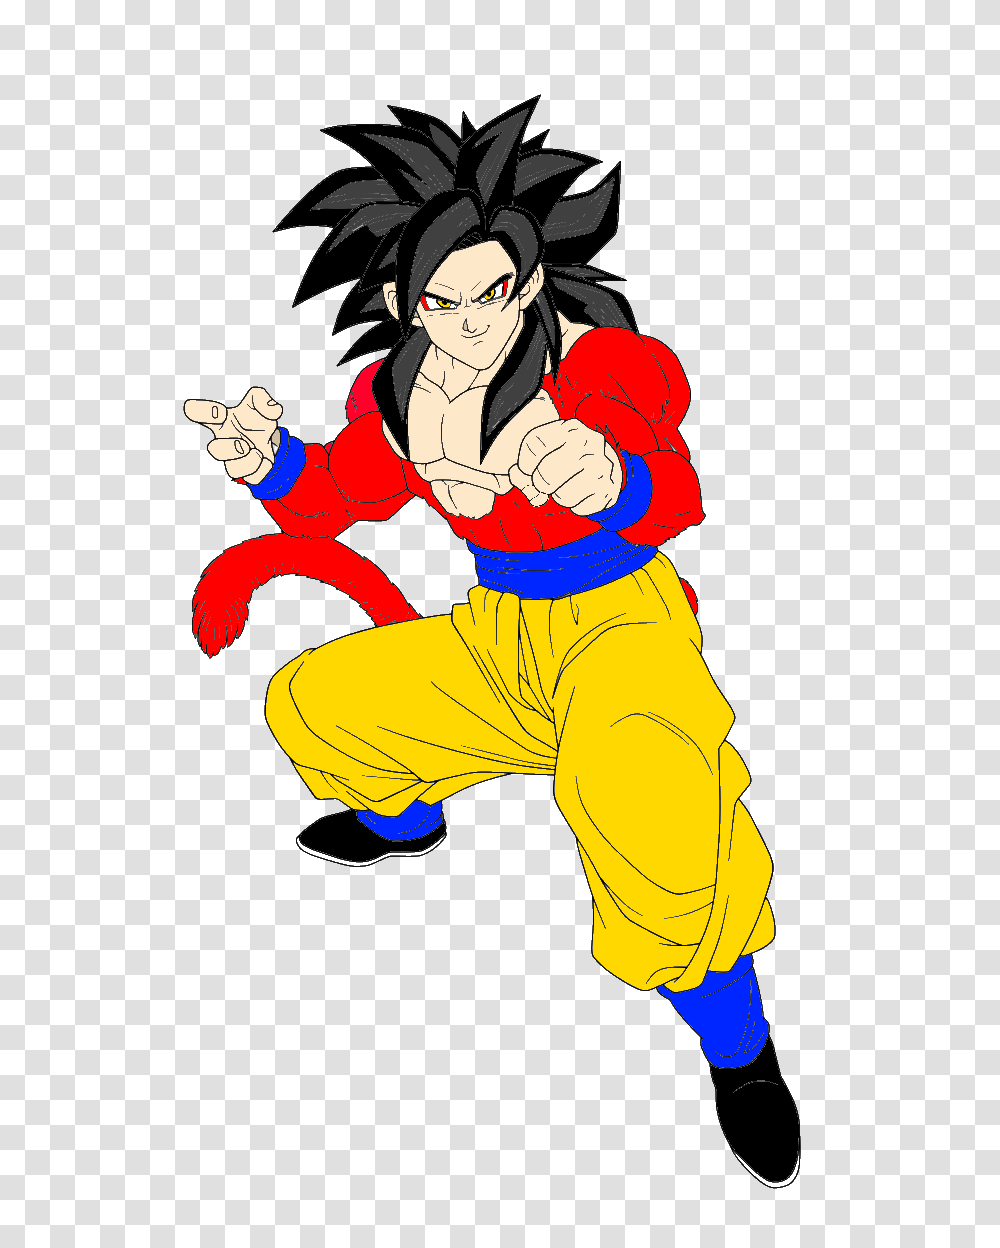 Goku Super Saiyan Image, Person, Human, Comics, Book Transparent Png